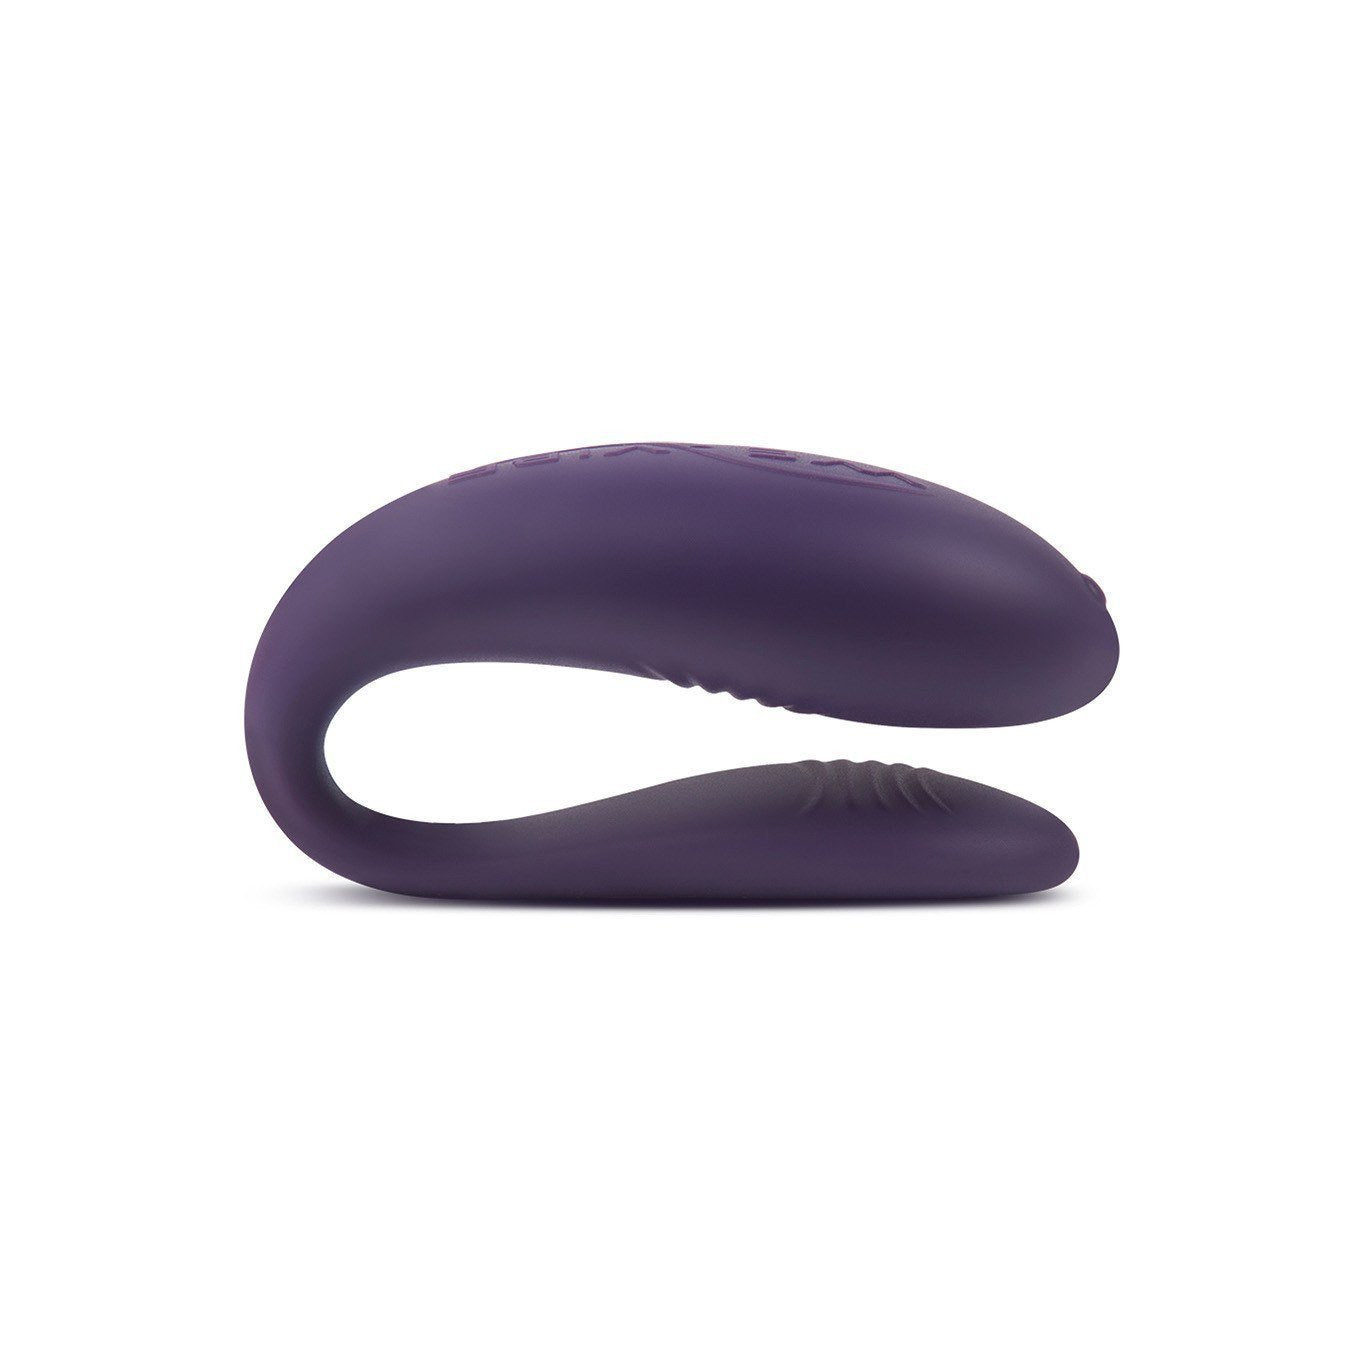 We-Vibe - Unite 2 Couples' Vibrator (Purple) -  Remote Control Couple's Massager (Vibration) Rechargeable  Durio.sg